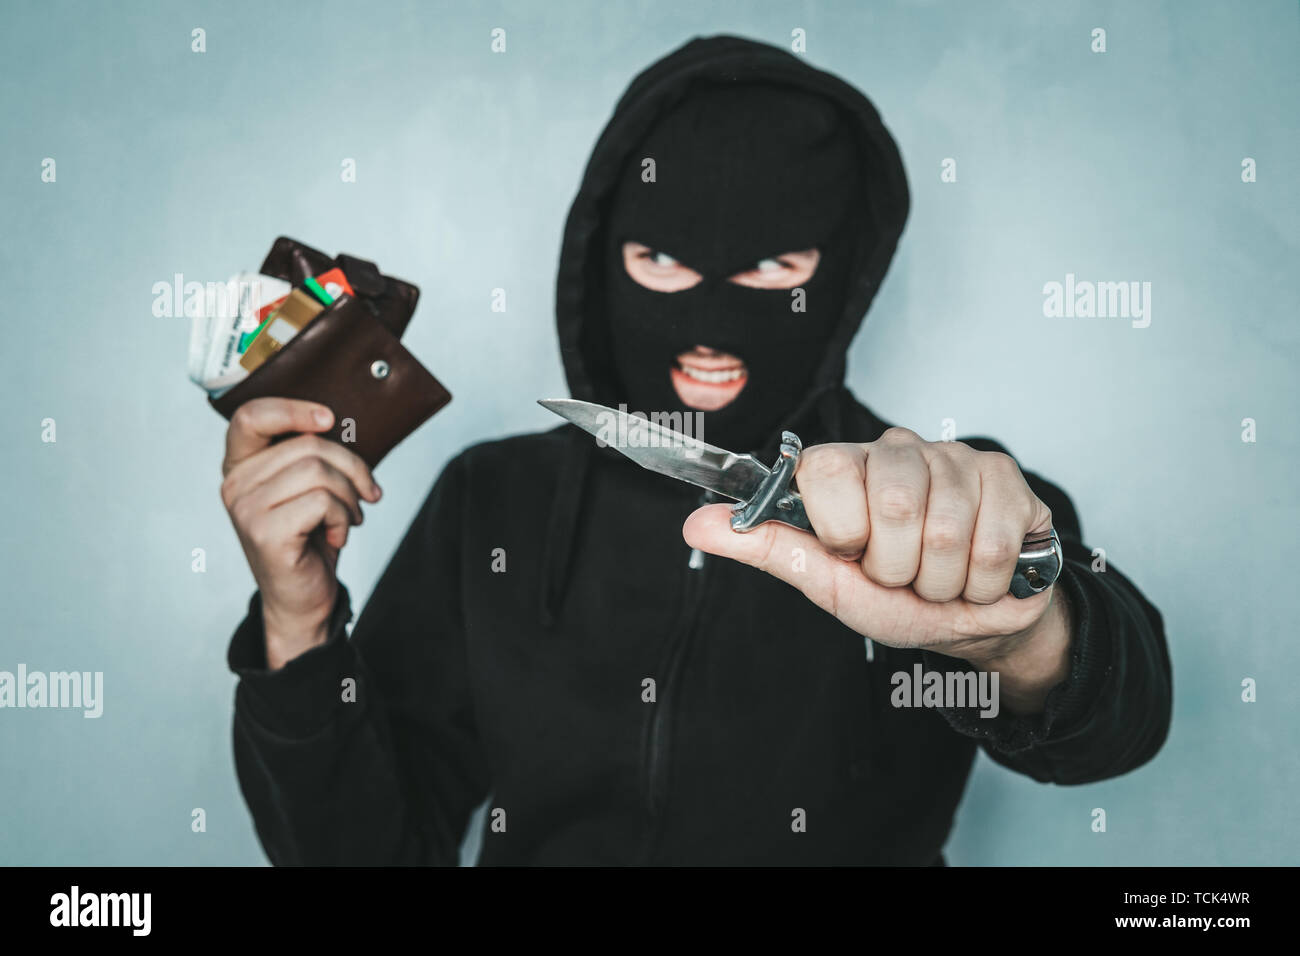 Kriminelle Raub Konzept. Ein böser Räuber droht mit einem Messer und hält einen gestohlenen Geldbeutel in seiner Hand. Lebensgefahr. Die hinterlistigen Dieb lächelt. Stockfoto